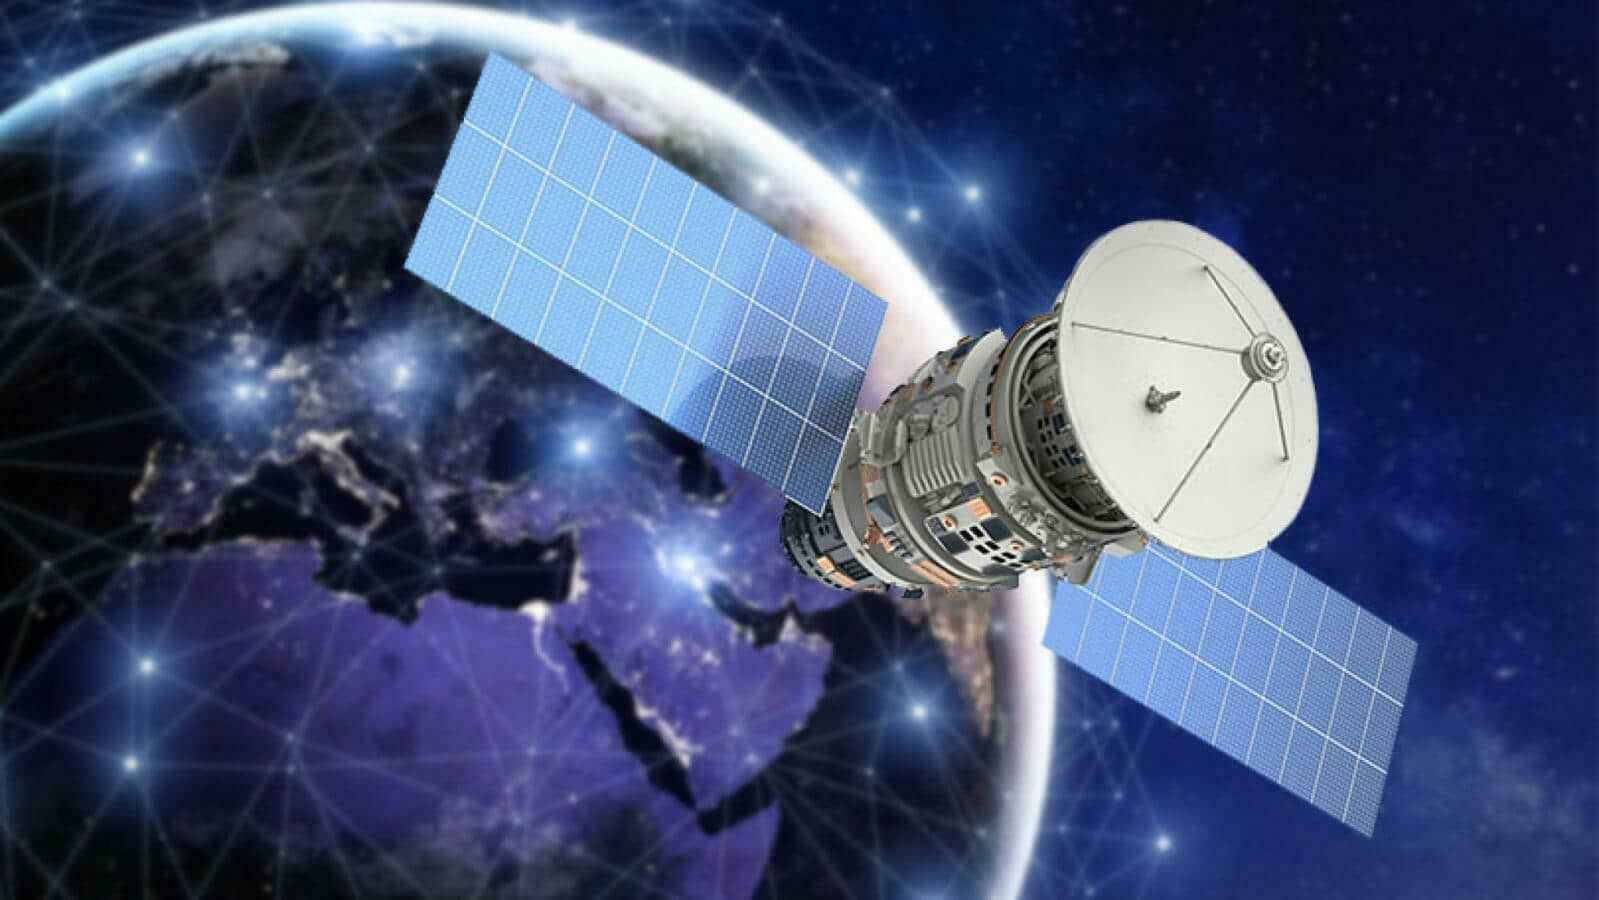 又叫板马斯克 亚马逊申请再发射4538颗宽带卫星  